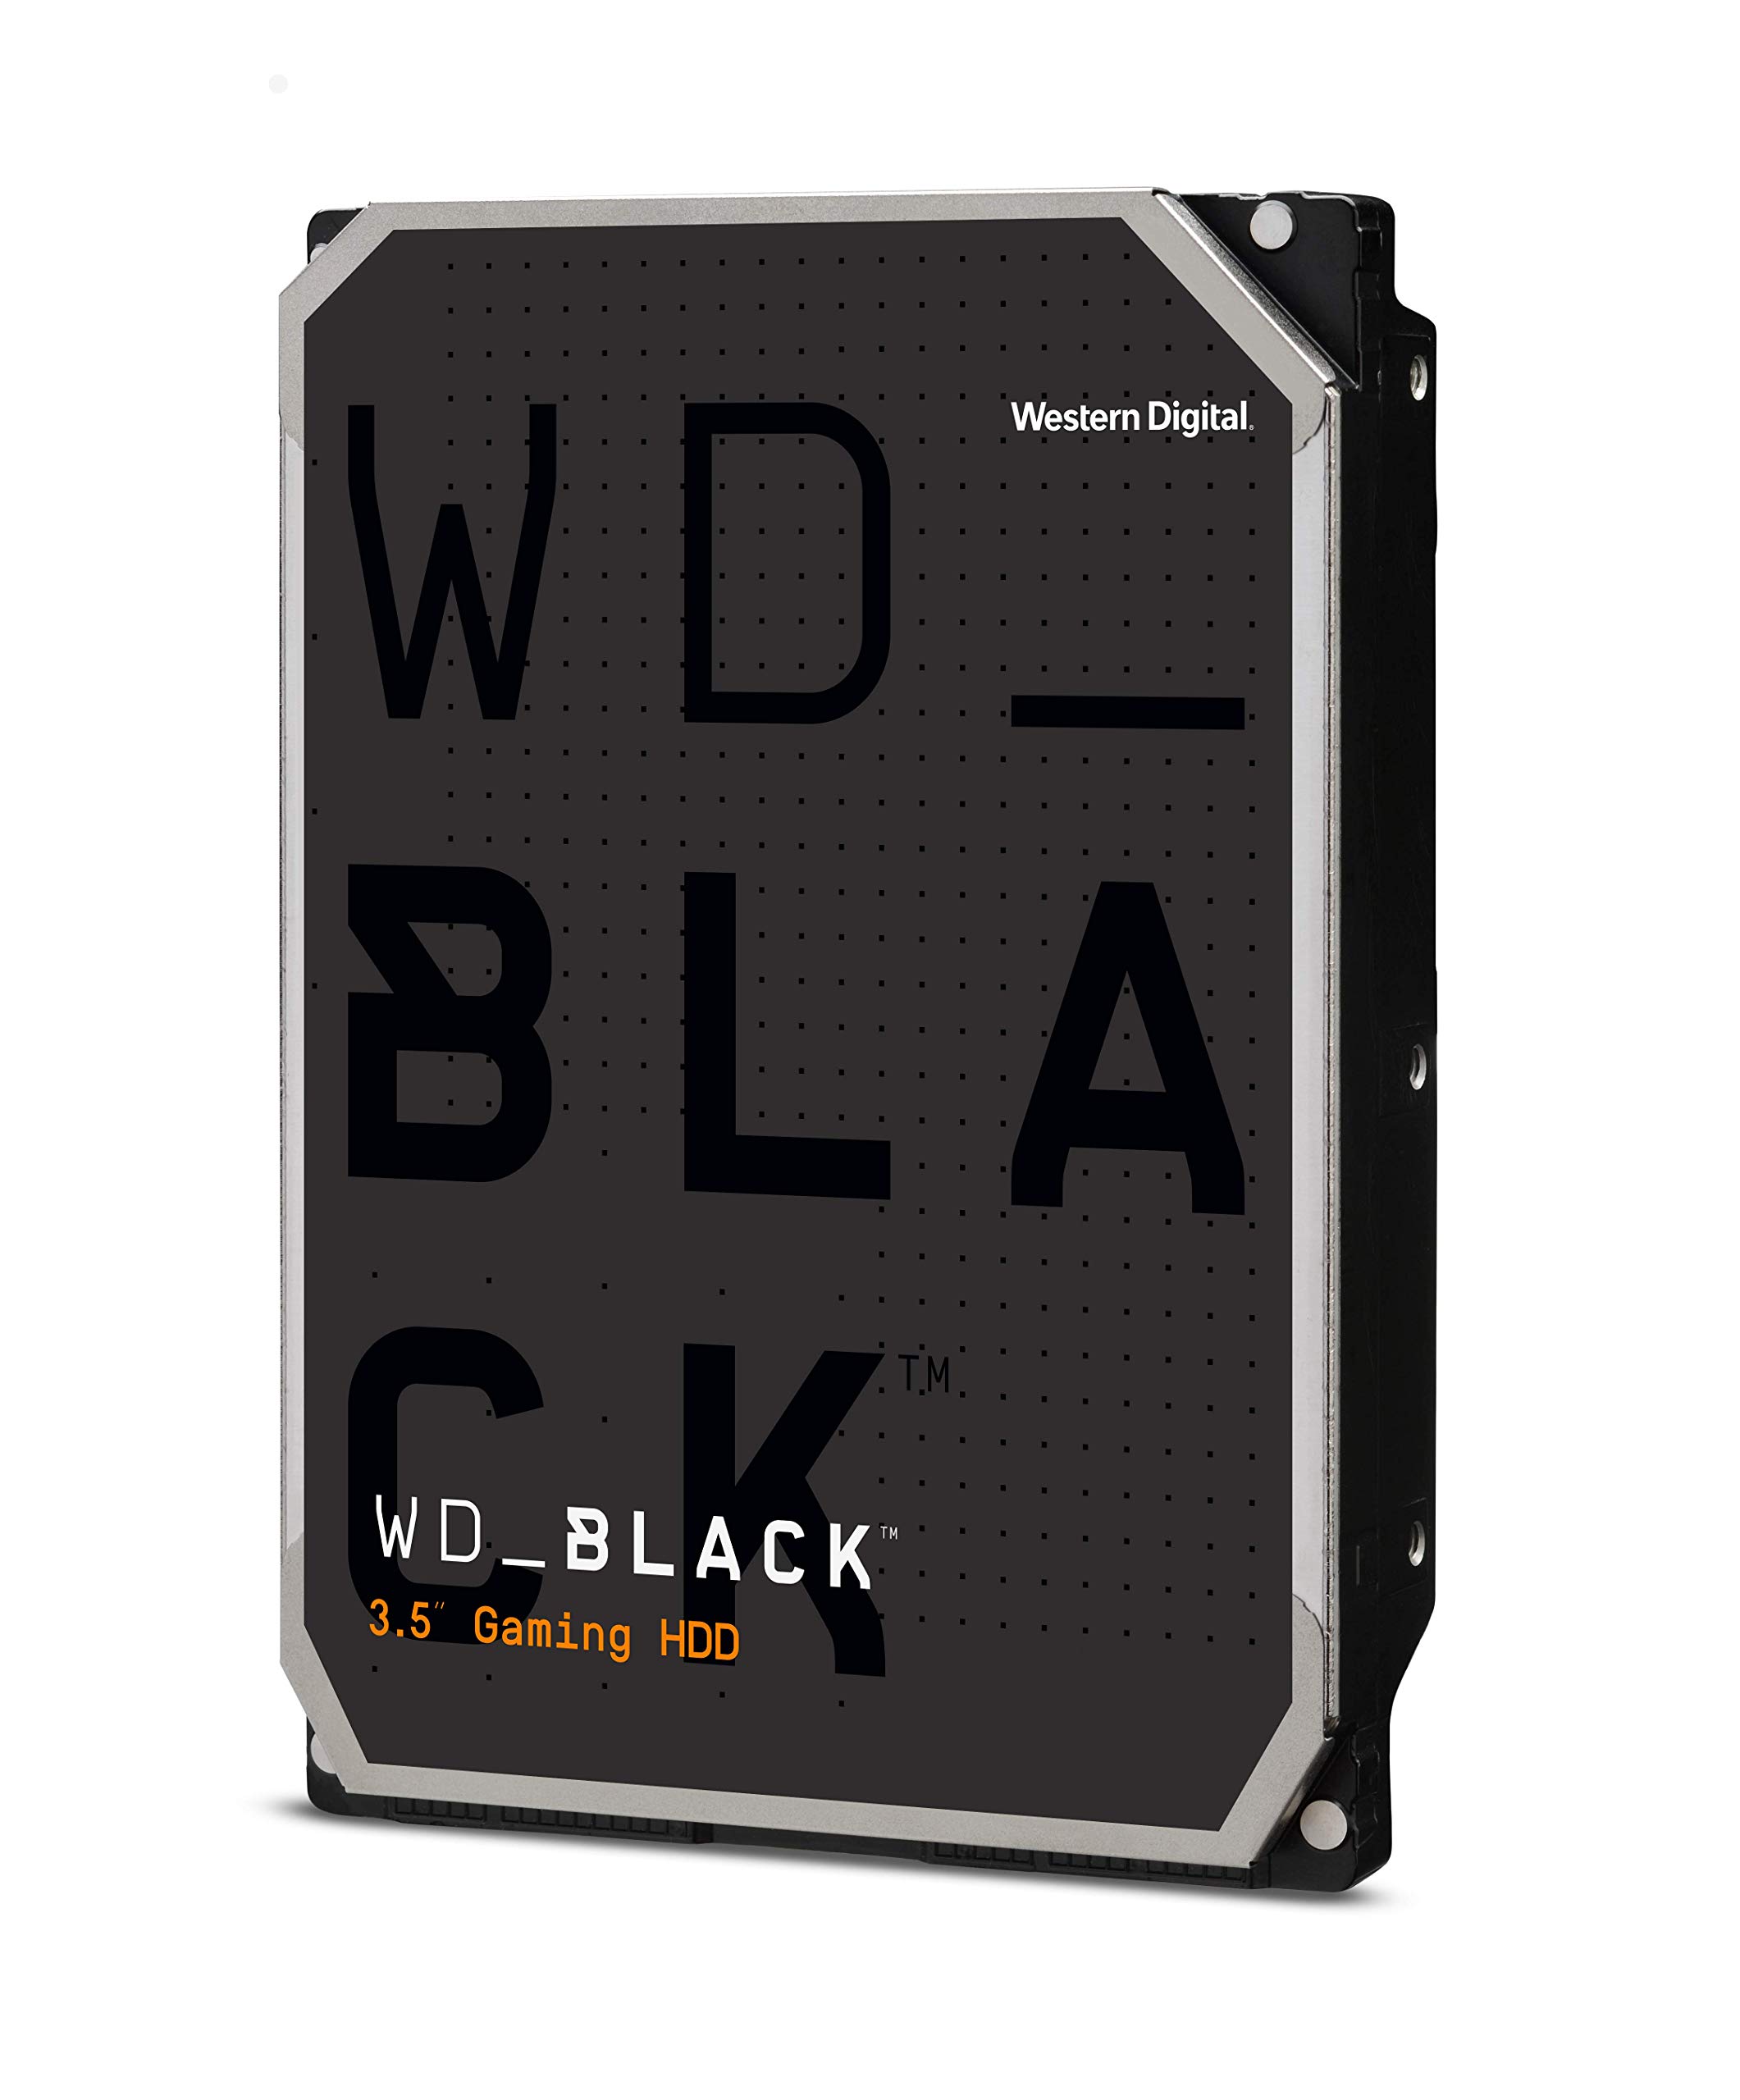 Western Digital HDD 2TB WD Black PCゲーム クリエイティブプロ 3.5インチ 内蔵HDD WD2003FZEX並行輸入品